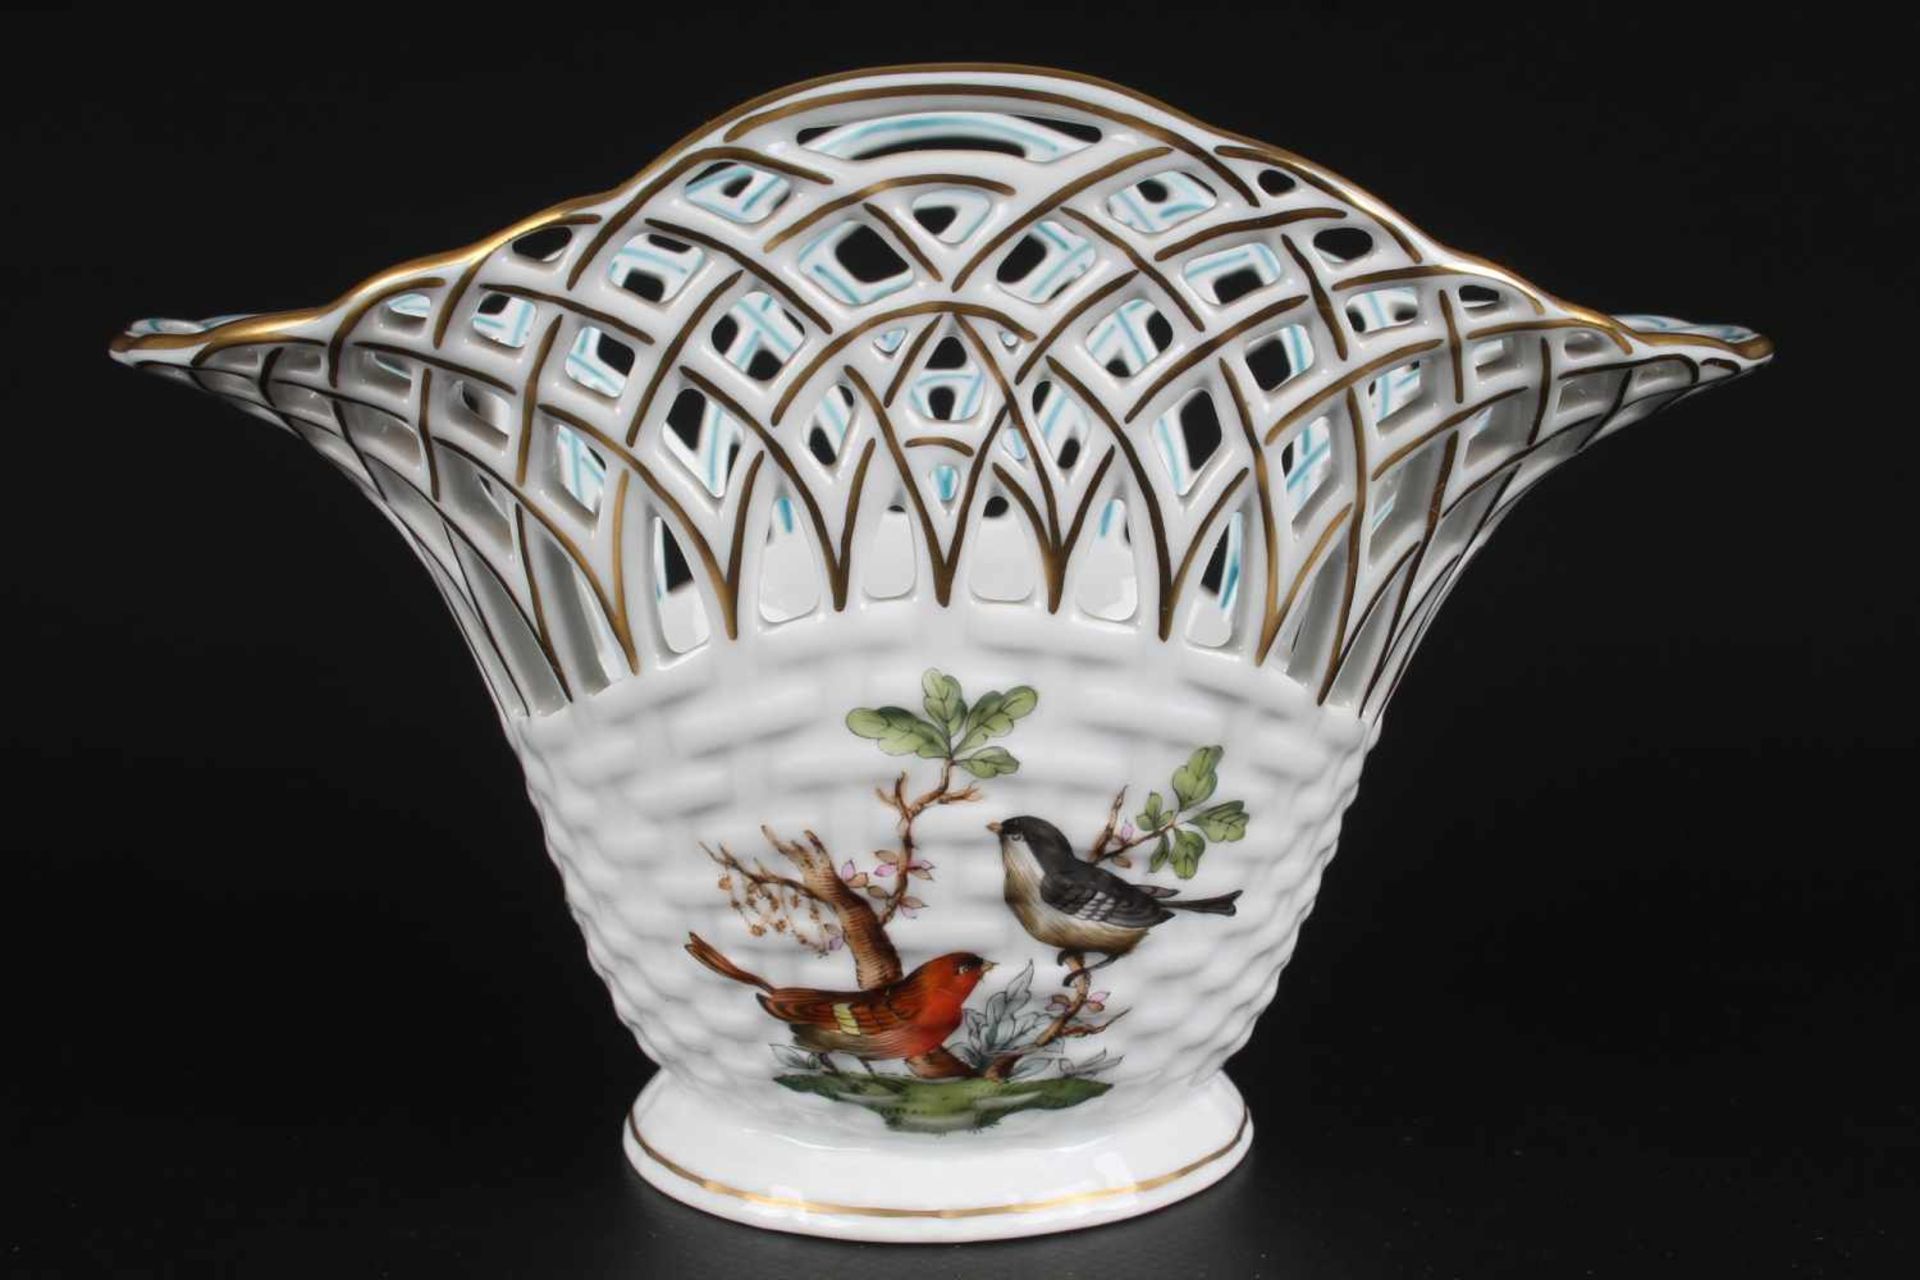 Herend Rothschild Schale bowl,Porzellan, Ungarn 20. Jahrhundert, Dekor Rothschild, Durchbrucharbeit, - Image 2 of 5